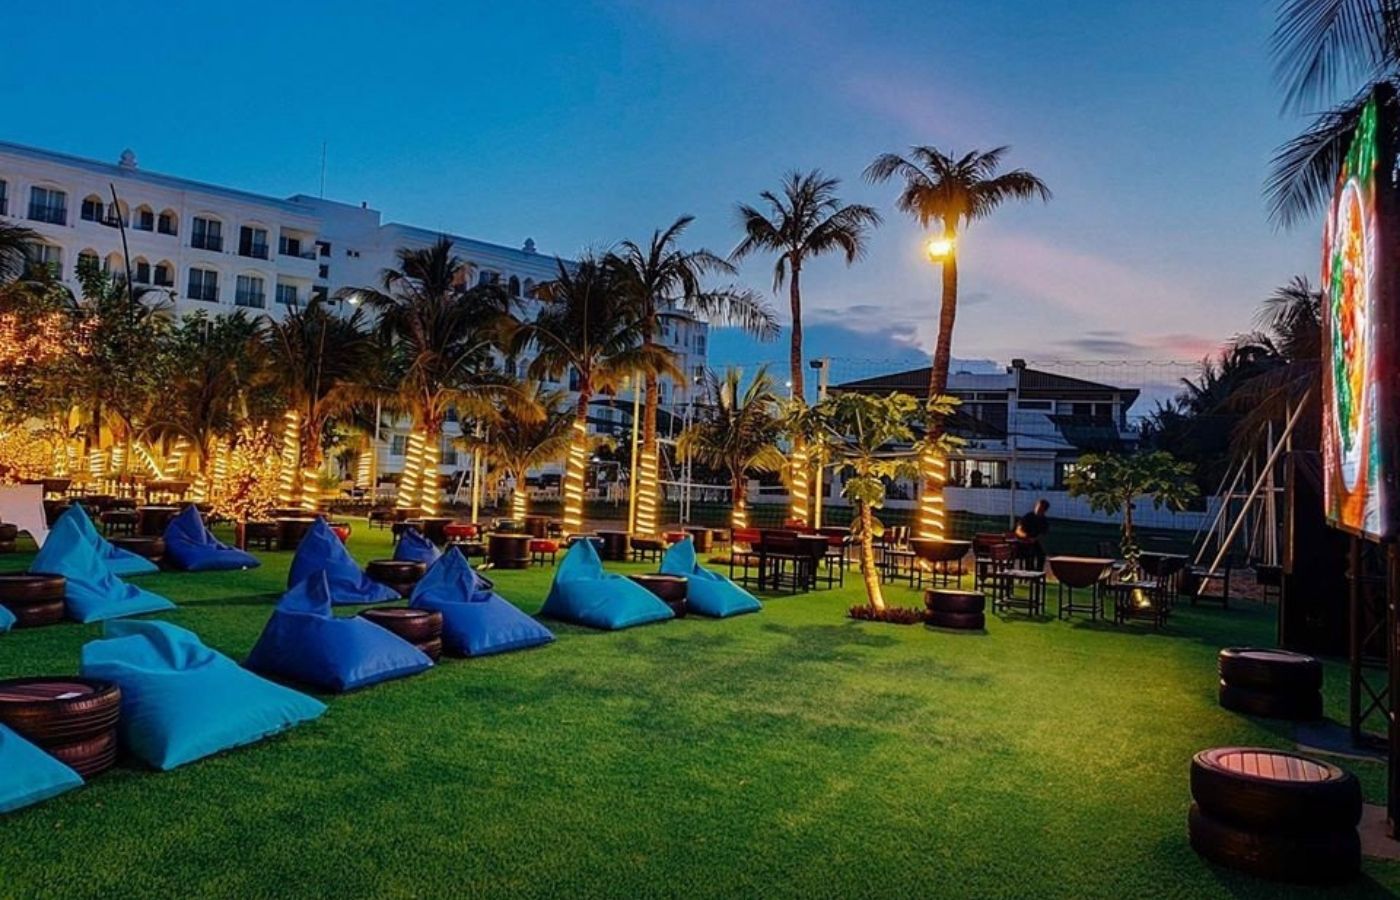 Champa Island Nha Trang - Resort Hotel & Spa- ốc đảo xanh giữa lòng thành phố biển 3